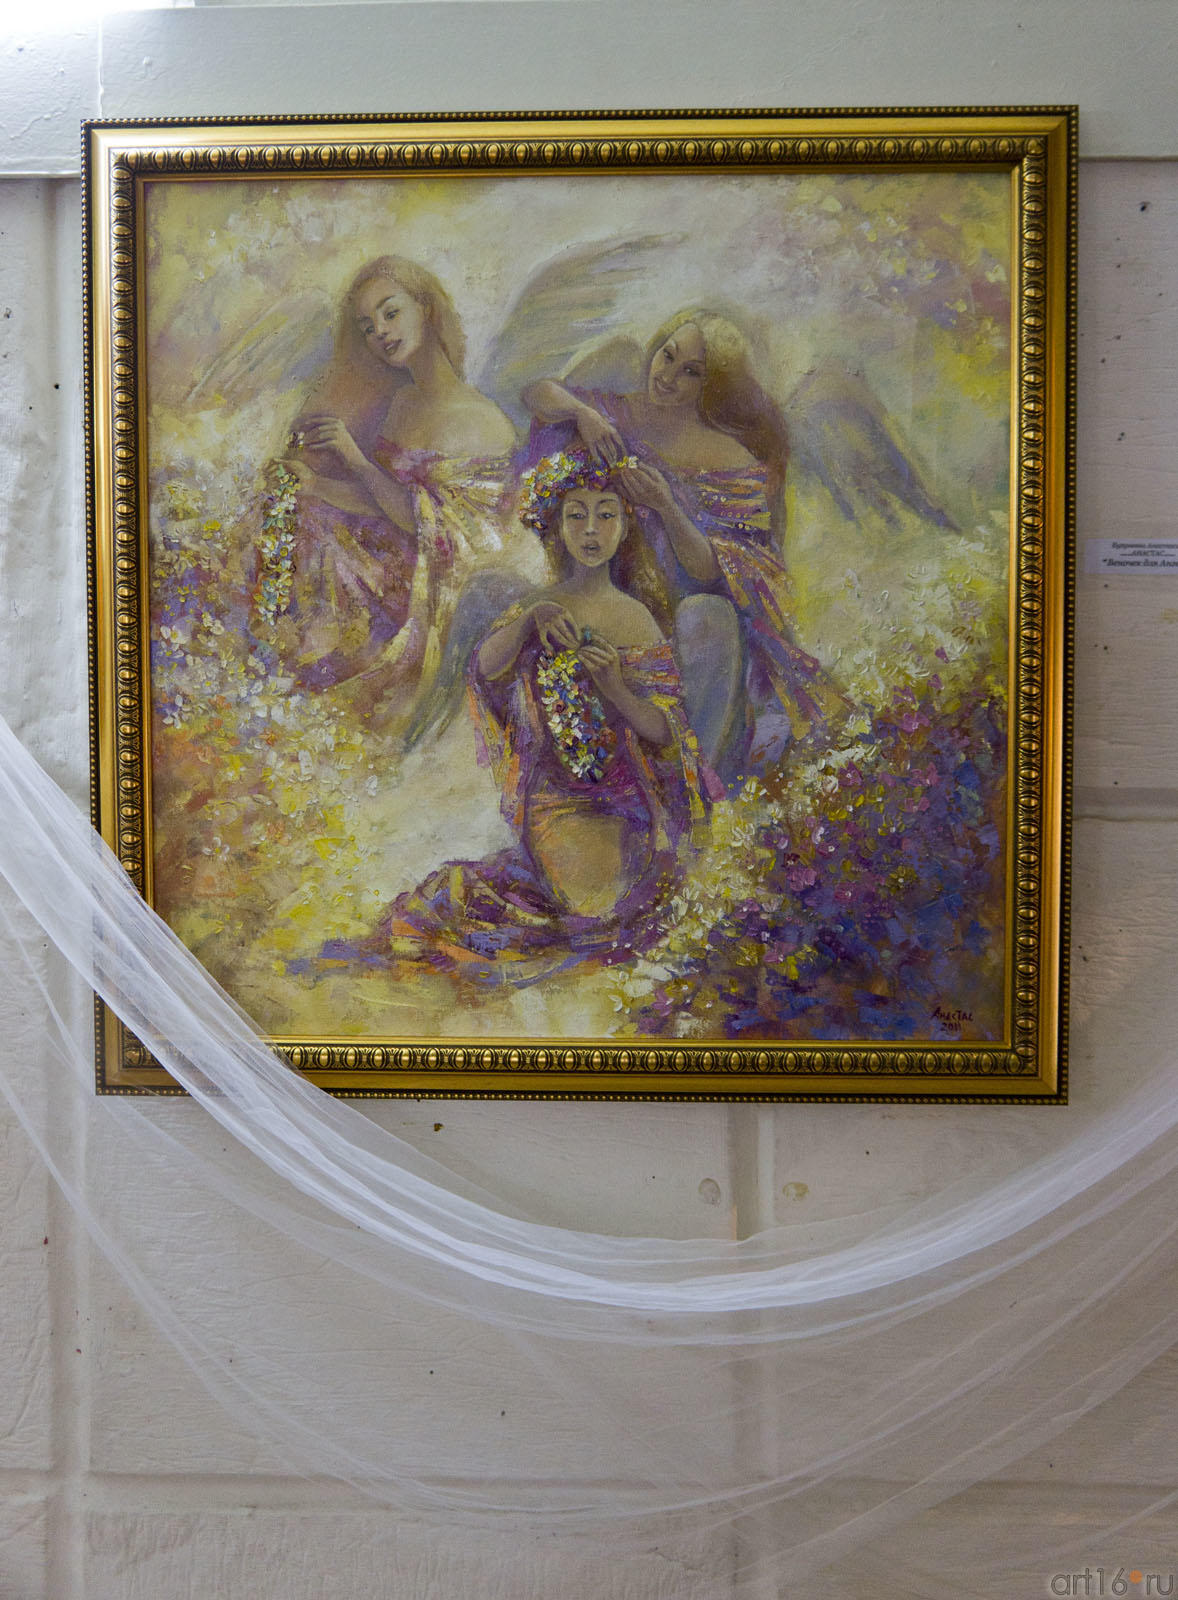 Веночек для Ангела.  Анастасия Бузунеева (Анастас)::Анастасия Бузунеева: «Как ангелы», живопись